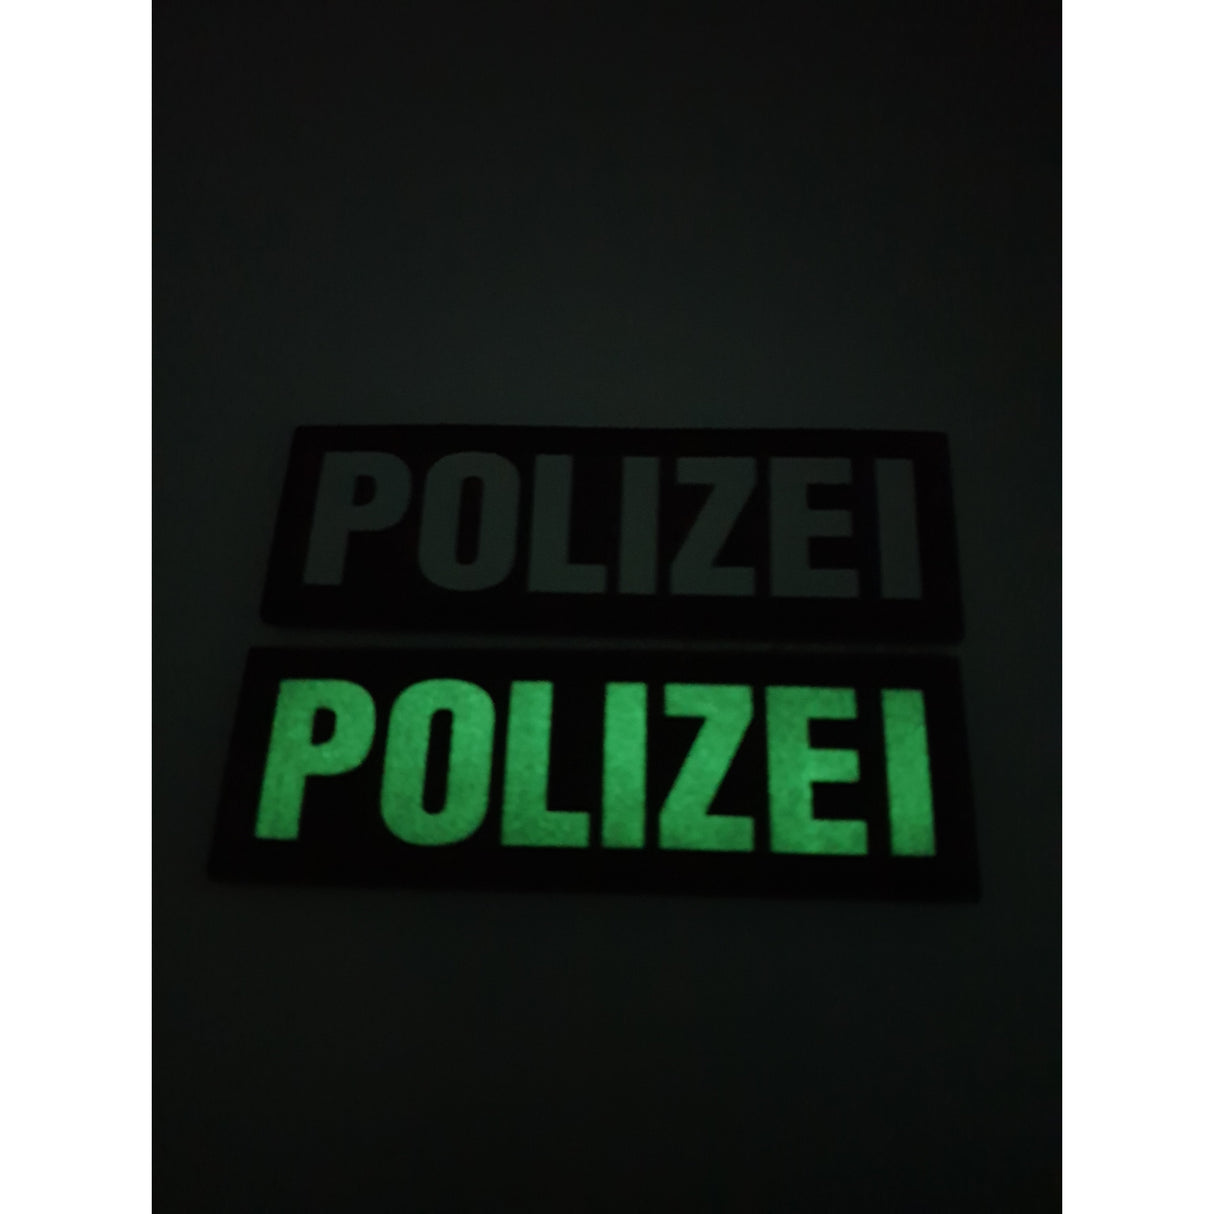 Polizei fluoreszierender Rubberpatch - Polizeimemesshop